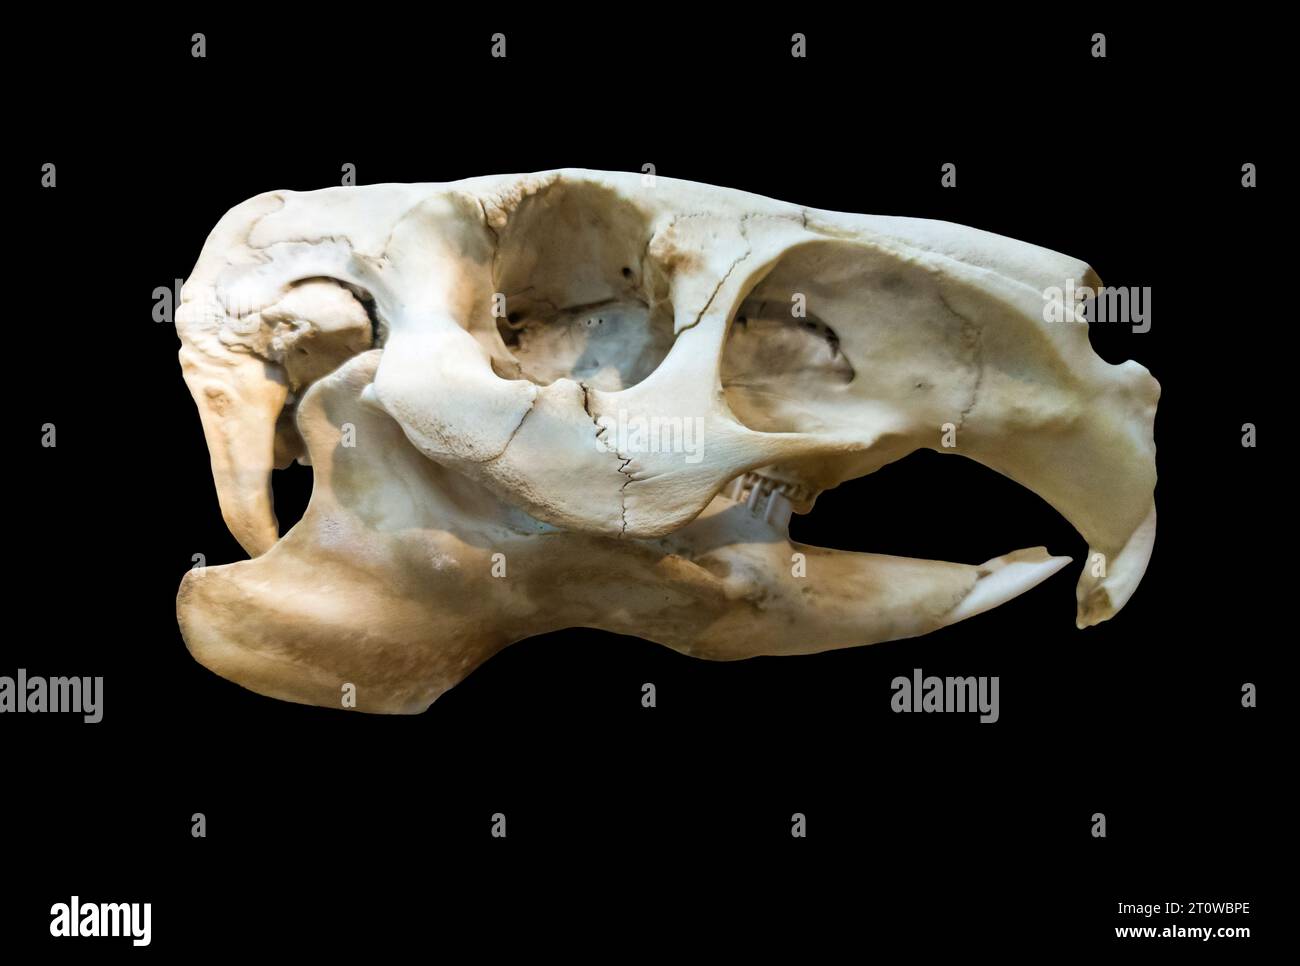 Crâne de capybara ou Hydrochoerus hydrochaeris, le plus grand rongeur du monde. Isolé sur fond noir Banque D'Images